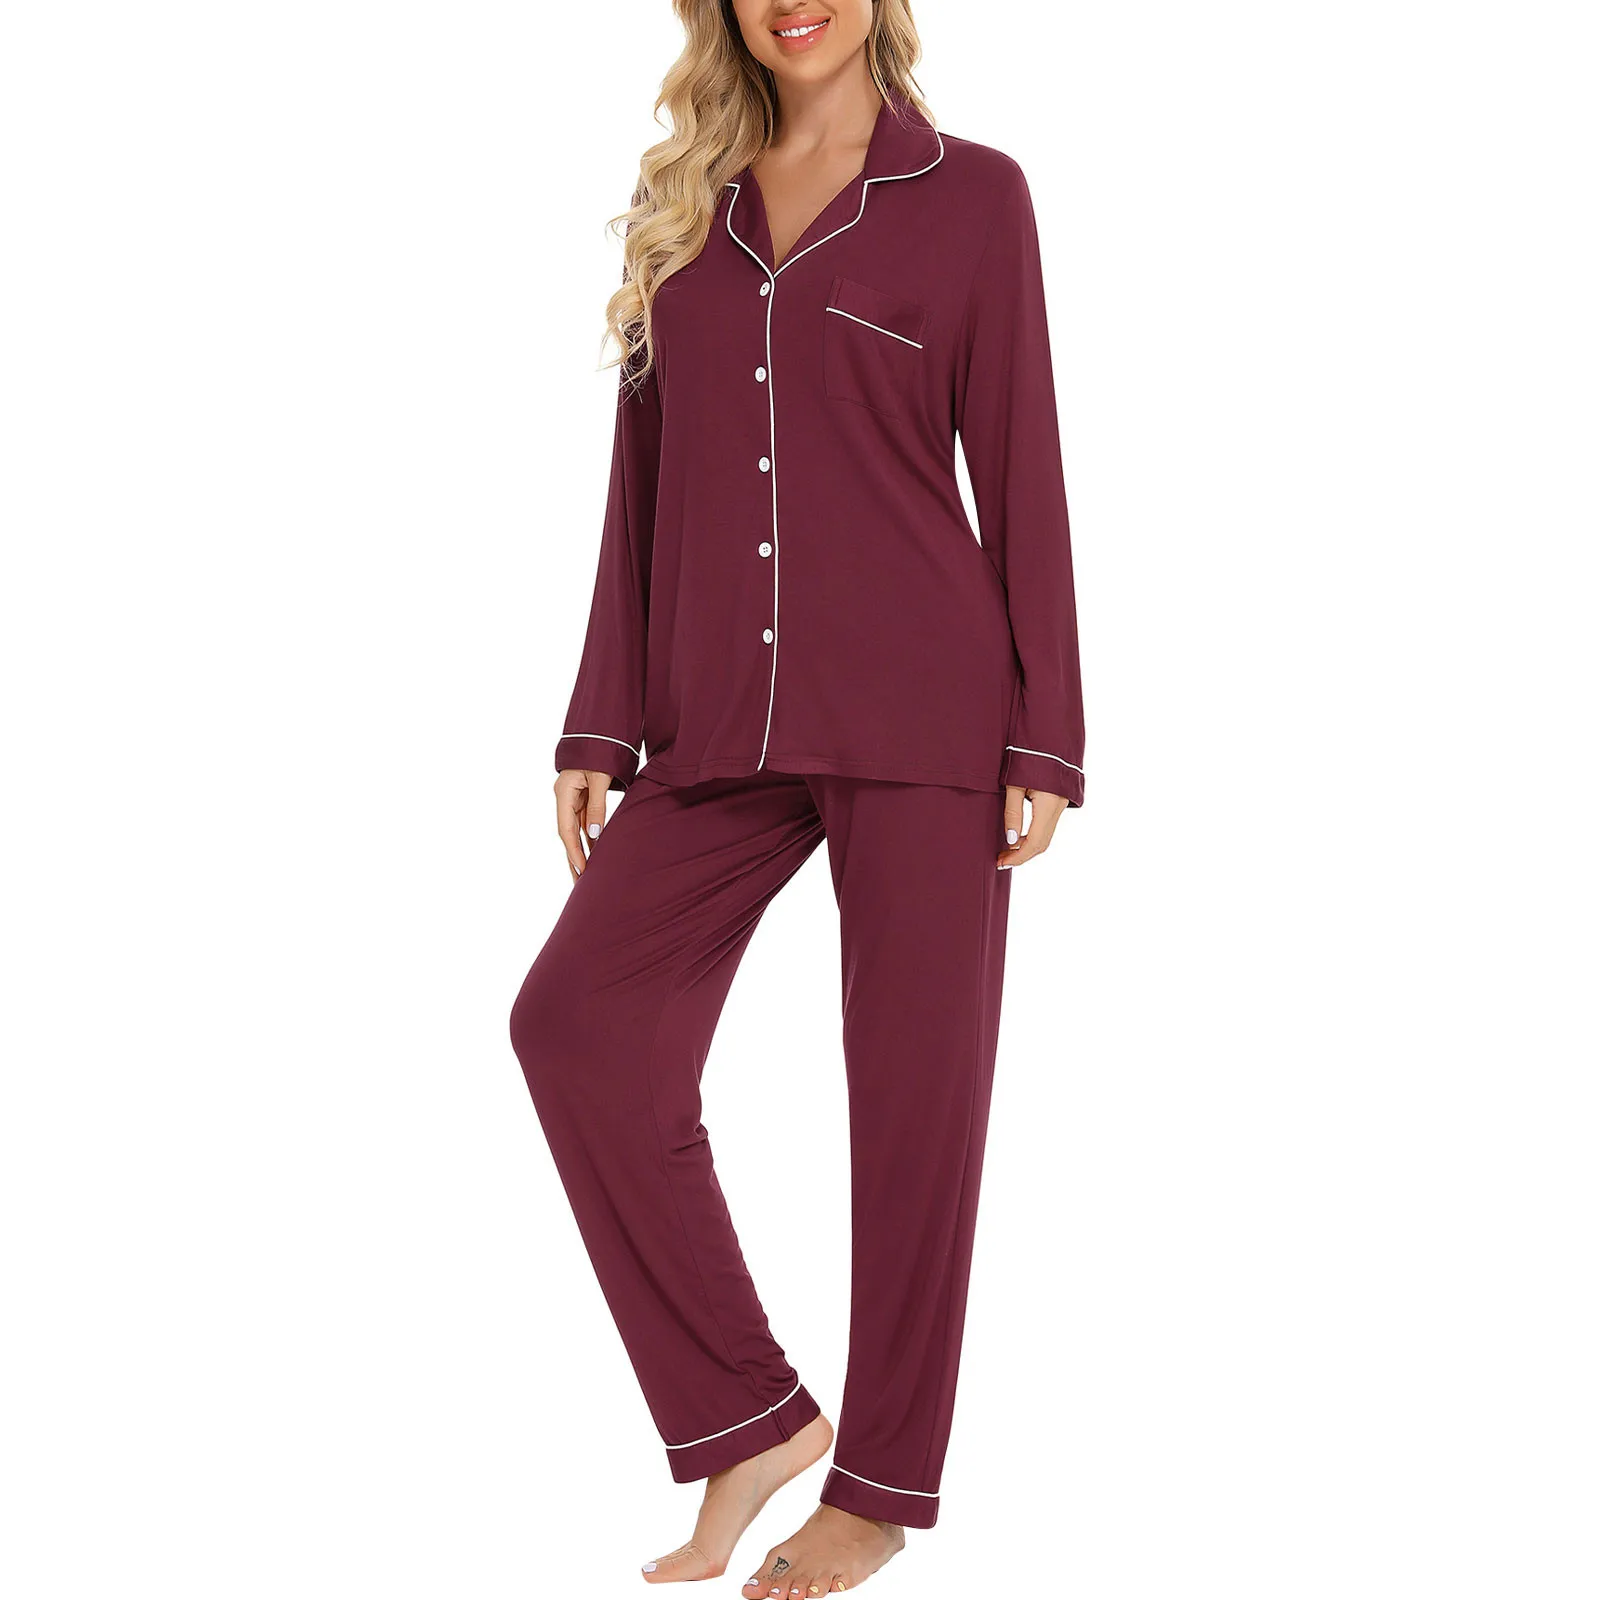 

Pajamas For Women Spring Summer Long-sleeved Pajama Sets Thin Modal Ladies Sleepwear Loungewear Pyjamas Large Size